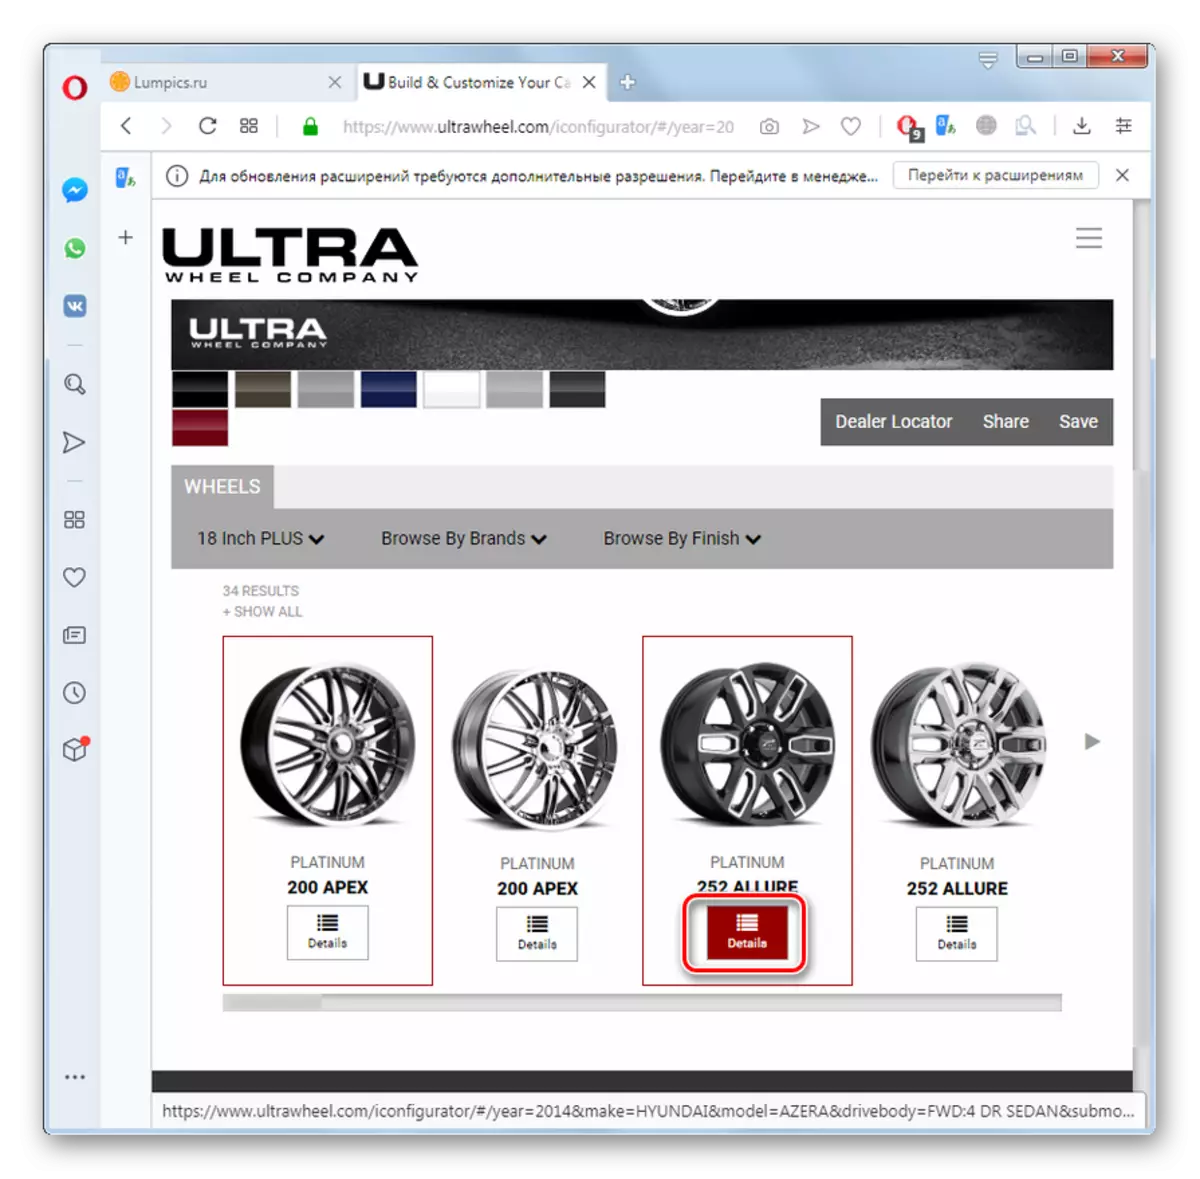 Shkoni në shikimin e informacionit për grupin e rrotave në faqen e internetit të Ultrawheel në shfletuesin e operës